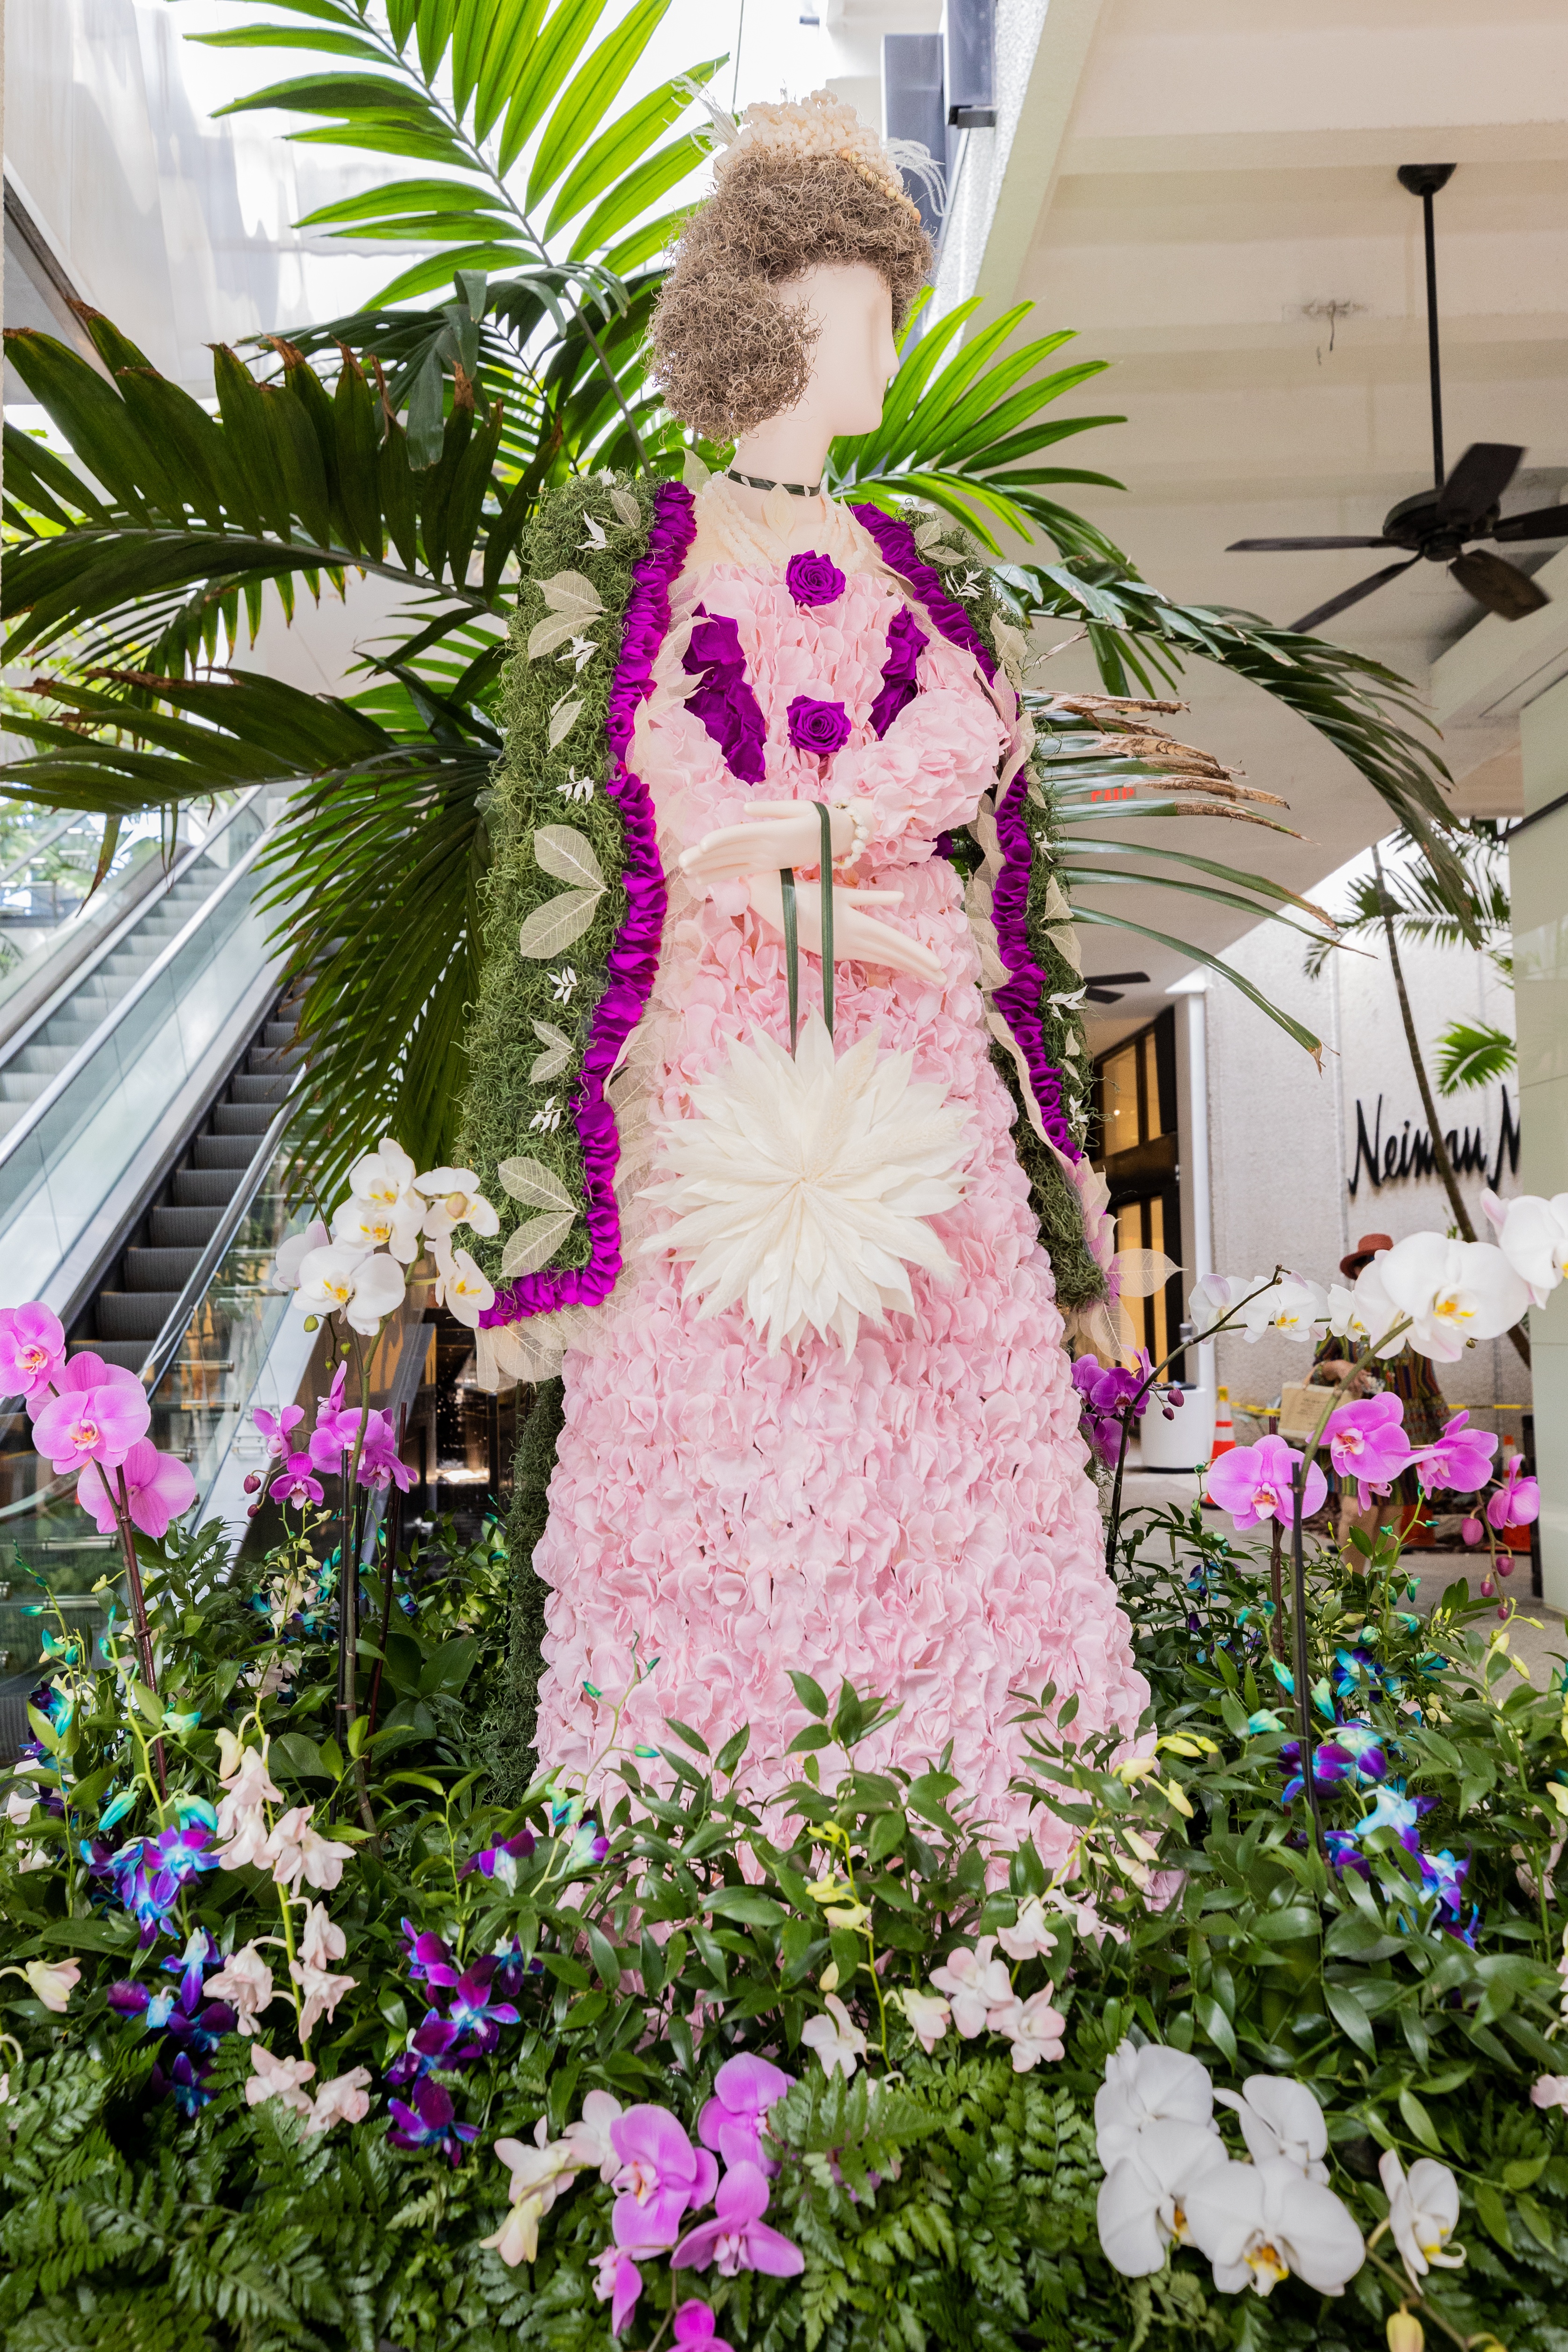 Floral mannequin inspired by Caroline Astor